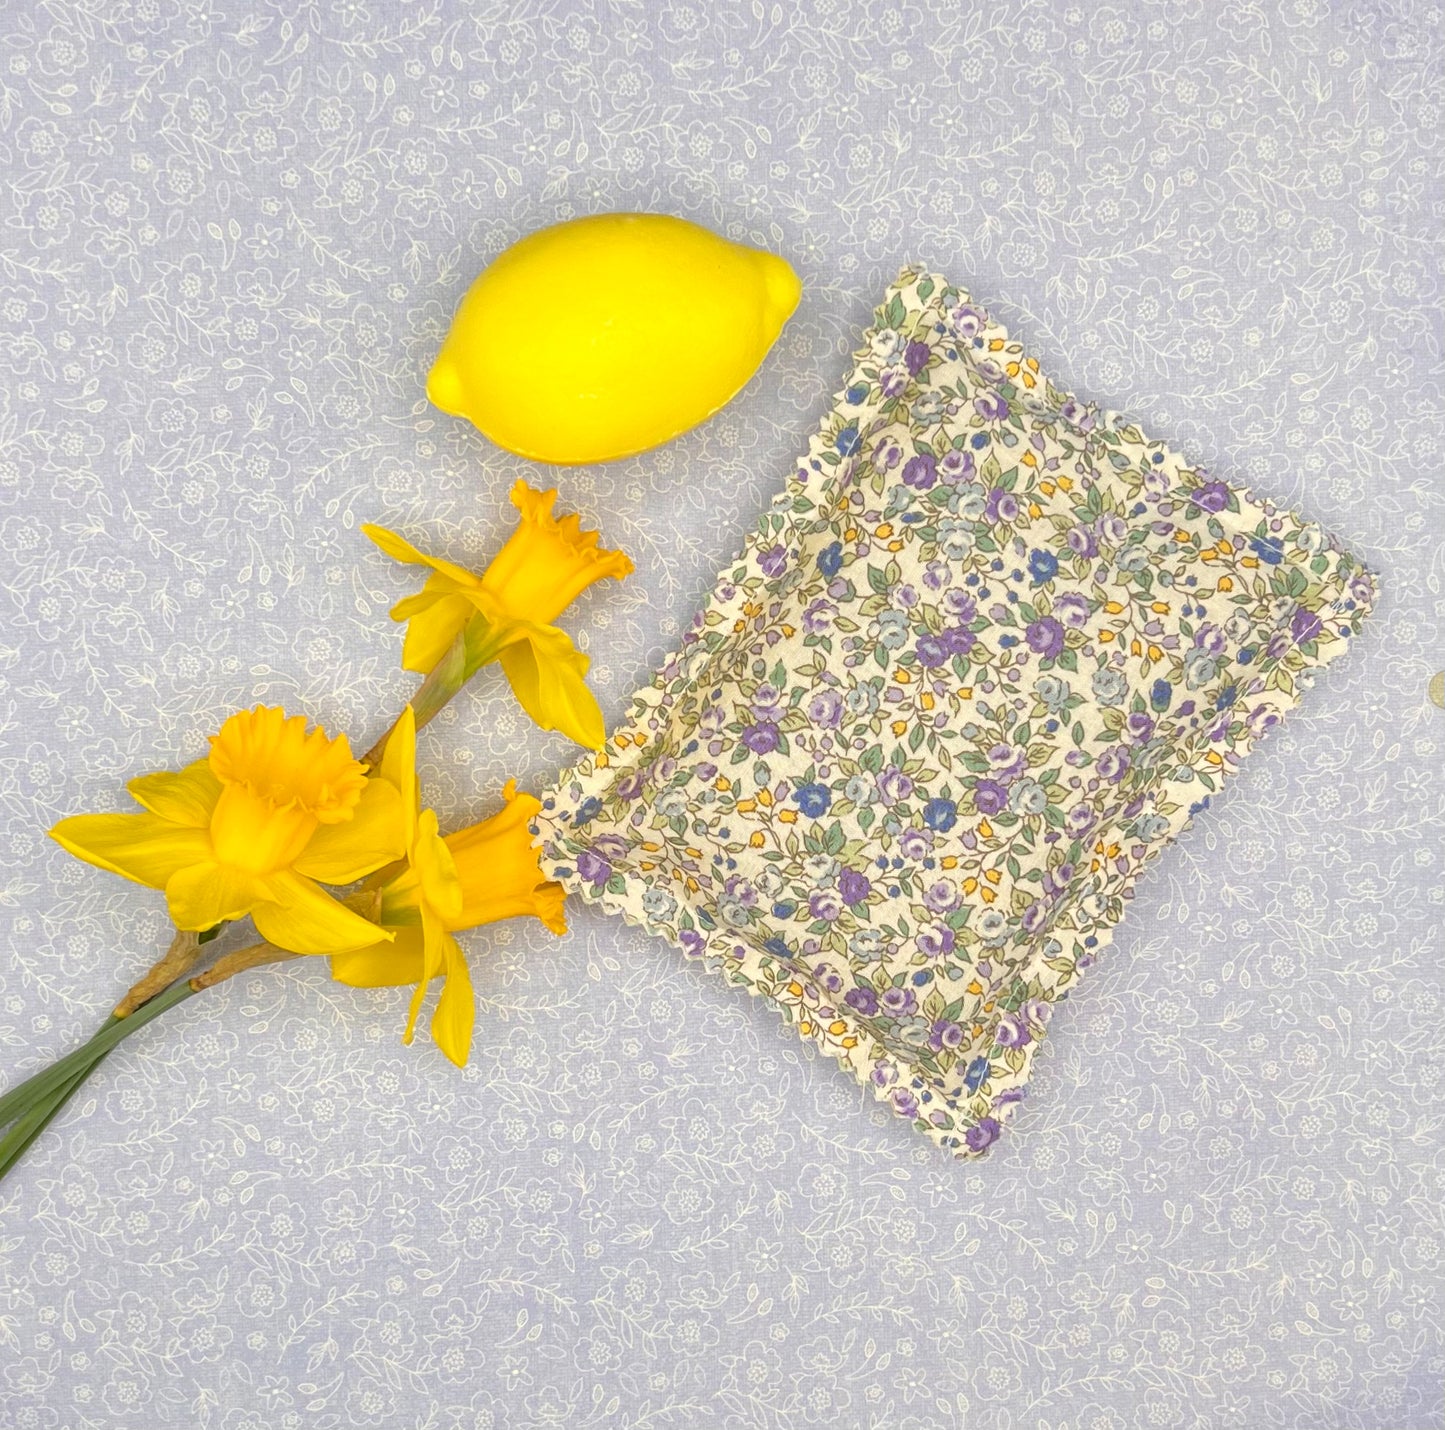 French Soap & Lavender Sachet Gift Bag Set